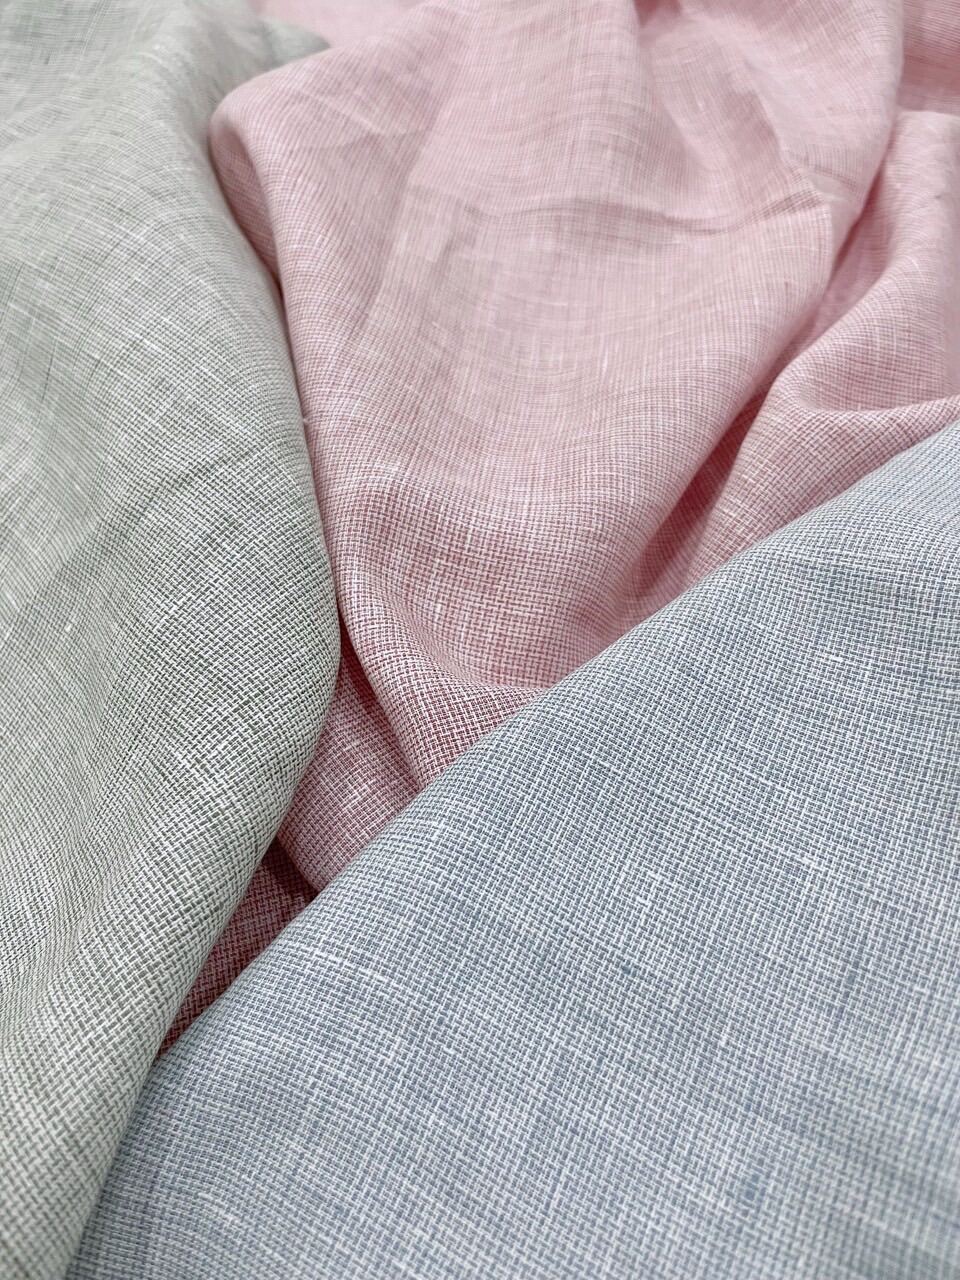 [HCM] Vải Linen Tưng hàng áo - Chất liệu mềm mại, đanh nhẹ - May đầm thì lót